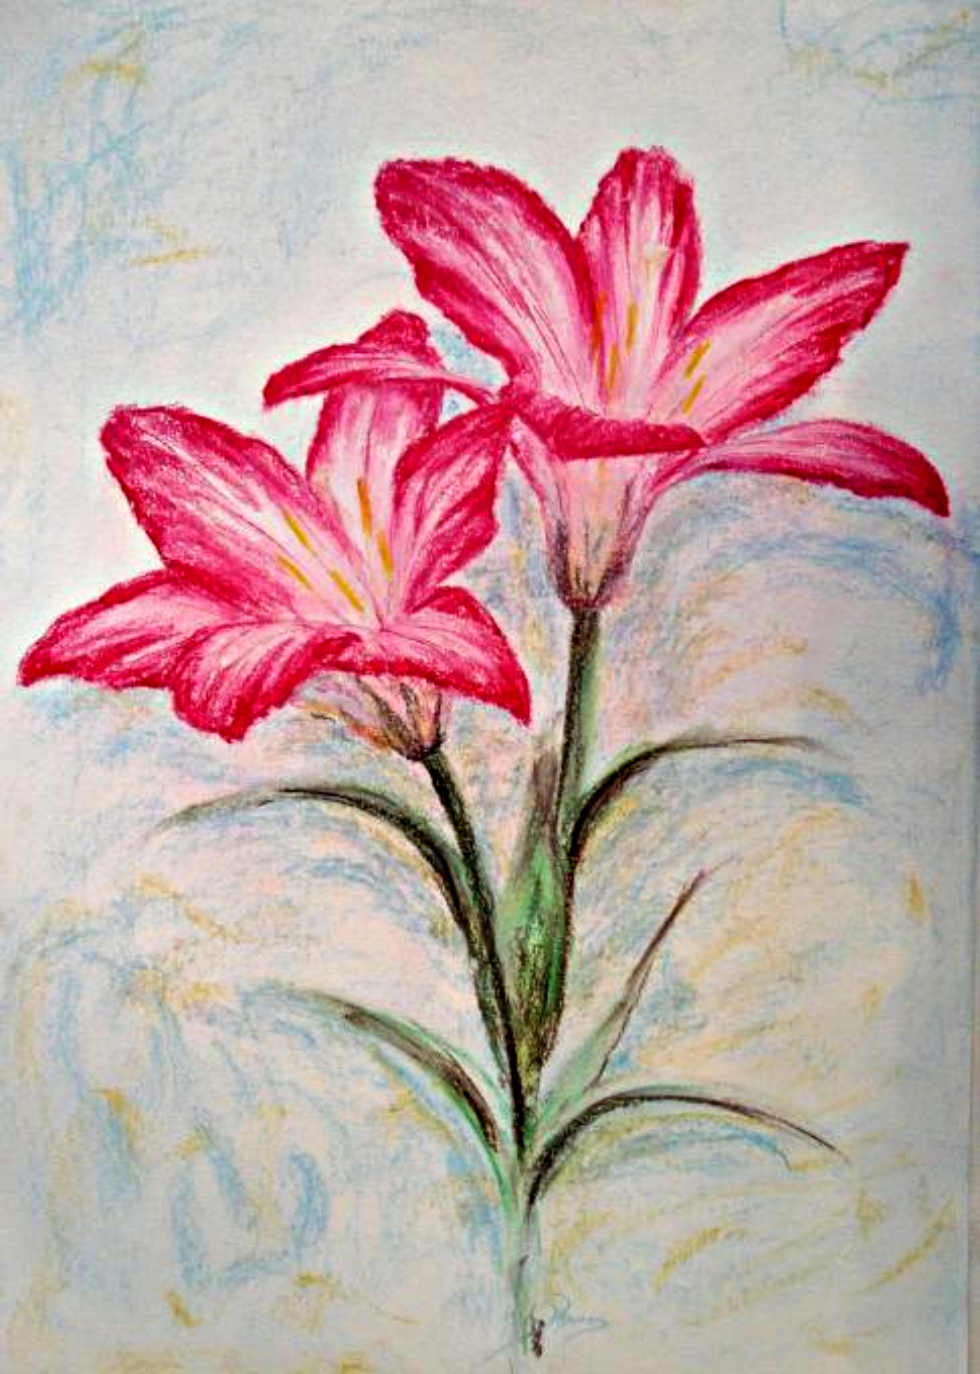 Tran ve hoa ly: Cùng tìm hiểu kỹ thuật vẽ hoa ly tinh tế và đầy nghệ thuật của nghệ sĩ trong bức tranh này. Màu sắc và cách sắp đặt tạo nên một khung cảnh yên bình, làm sống lại vẻ đẹp của loài hoa này.